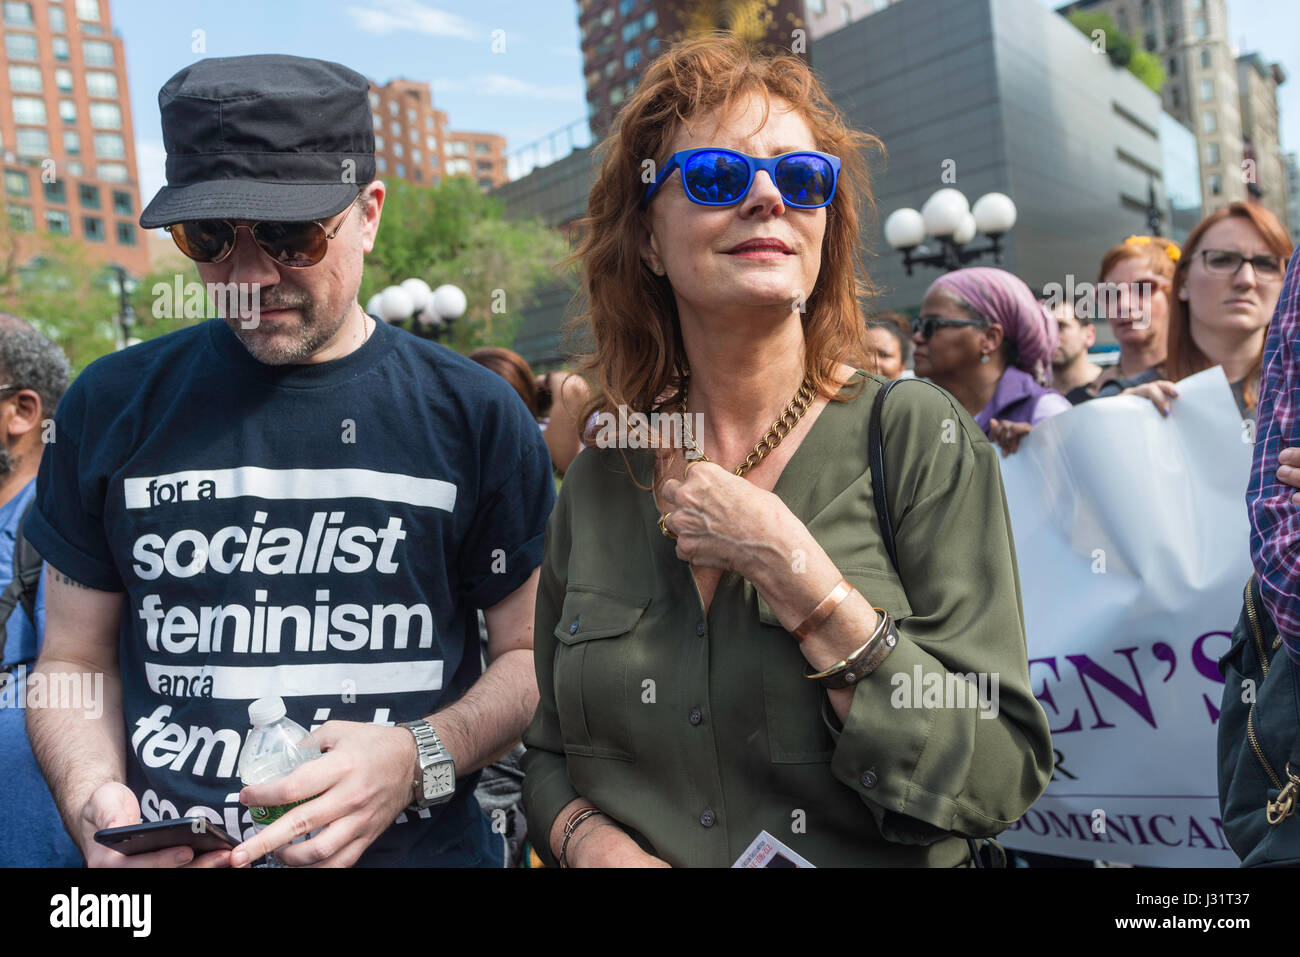 New York, NY, 1 maggio 2017 - Attore e attivista politico Susan Sarandon in un giorno di maggio rally in Union Square Park. ©Stacy Rosenstock Walsh/Alamy Live News Foto Stock